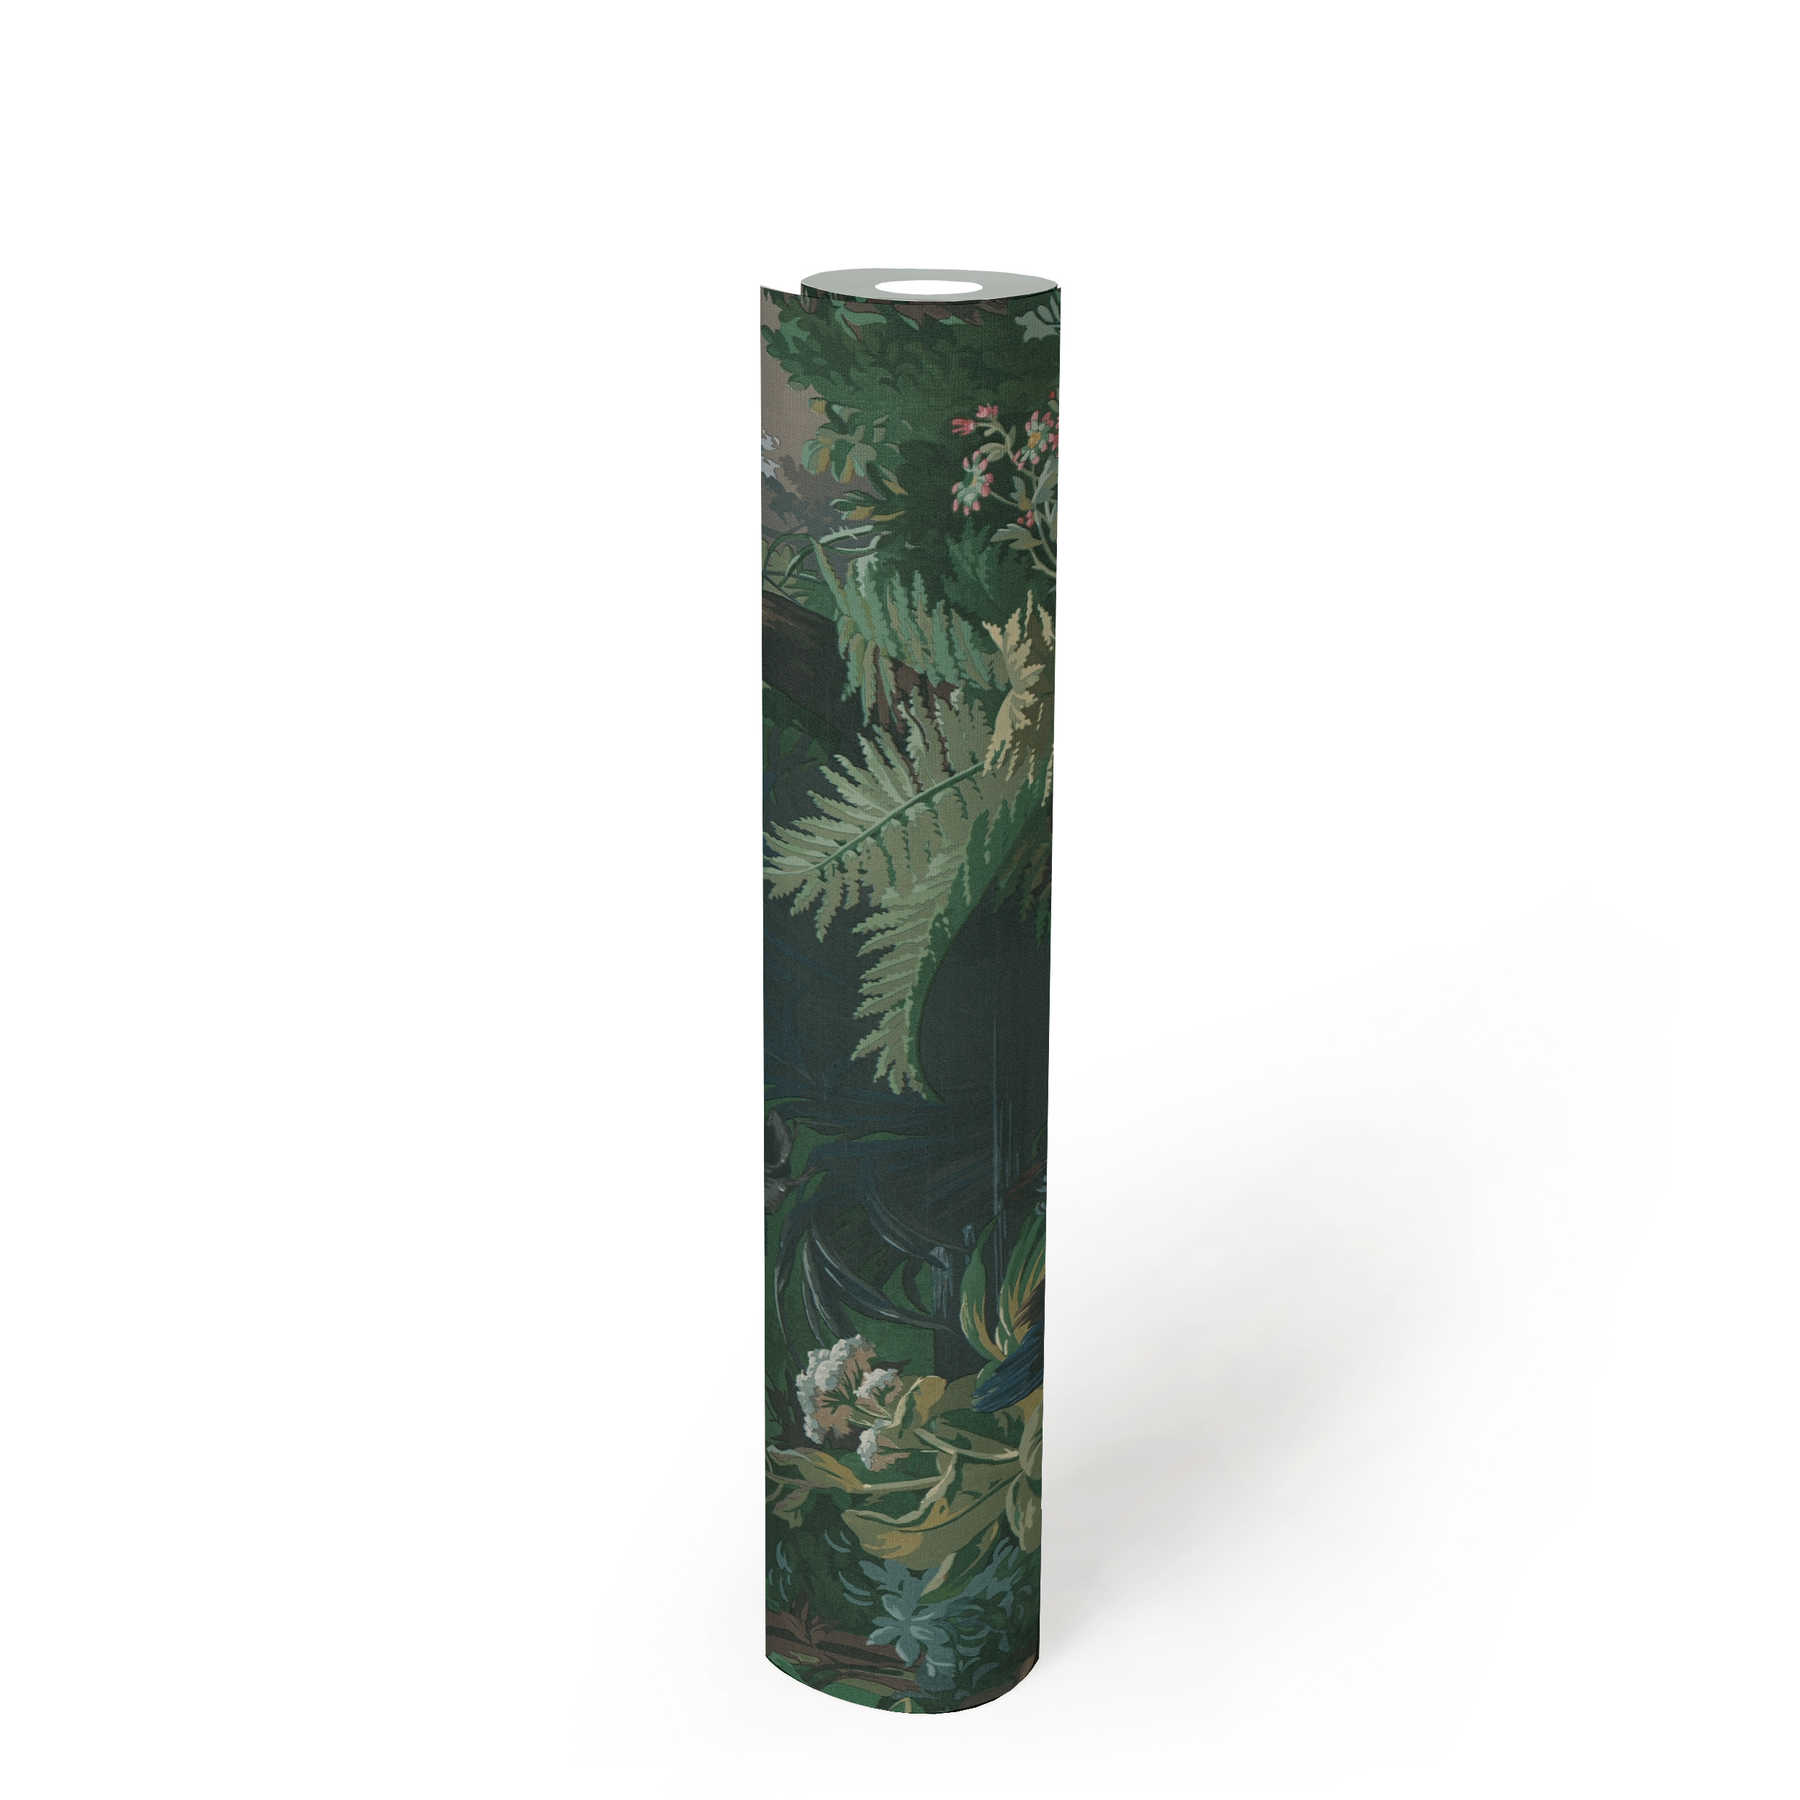             Papier peint motif chasse, forêt & canards - vert, bleu, rose
        